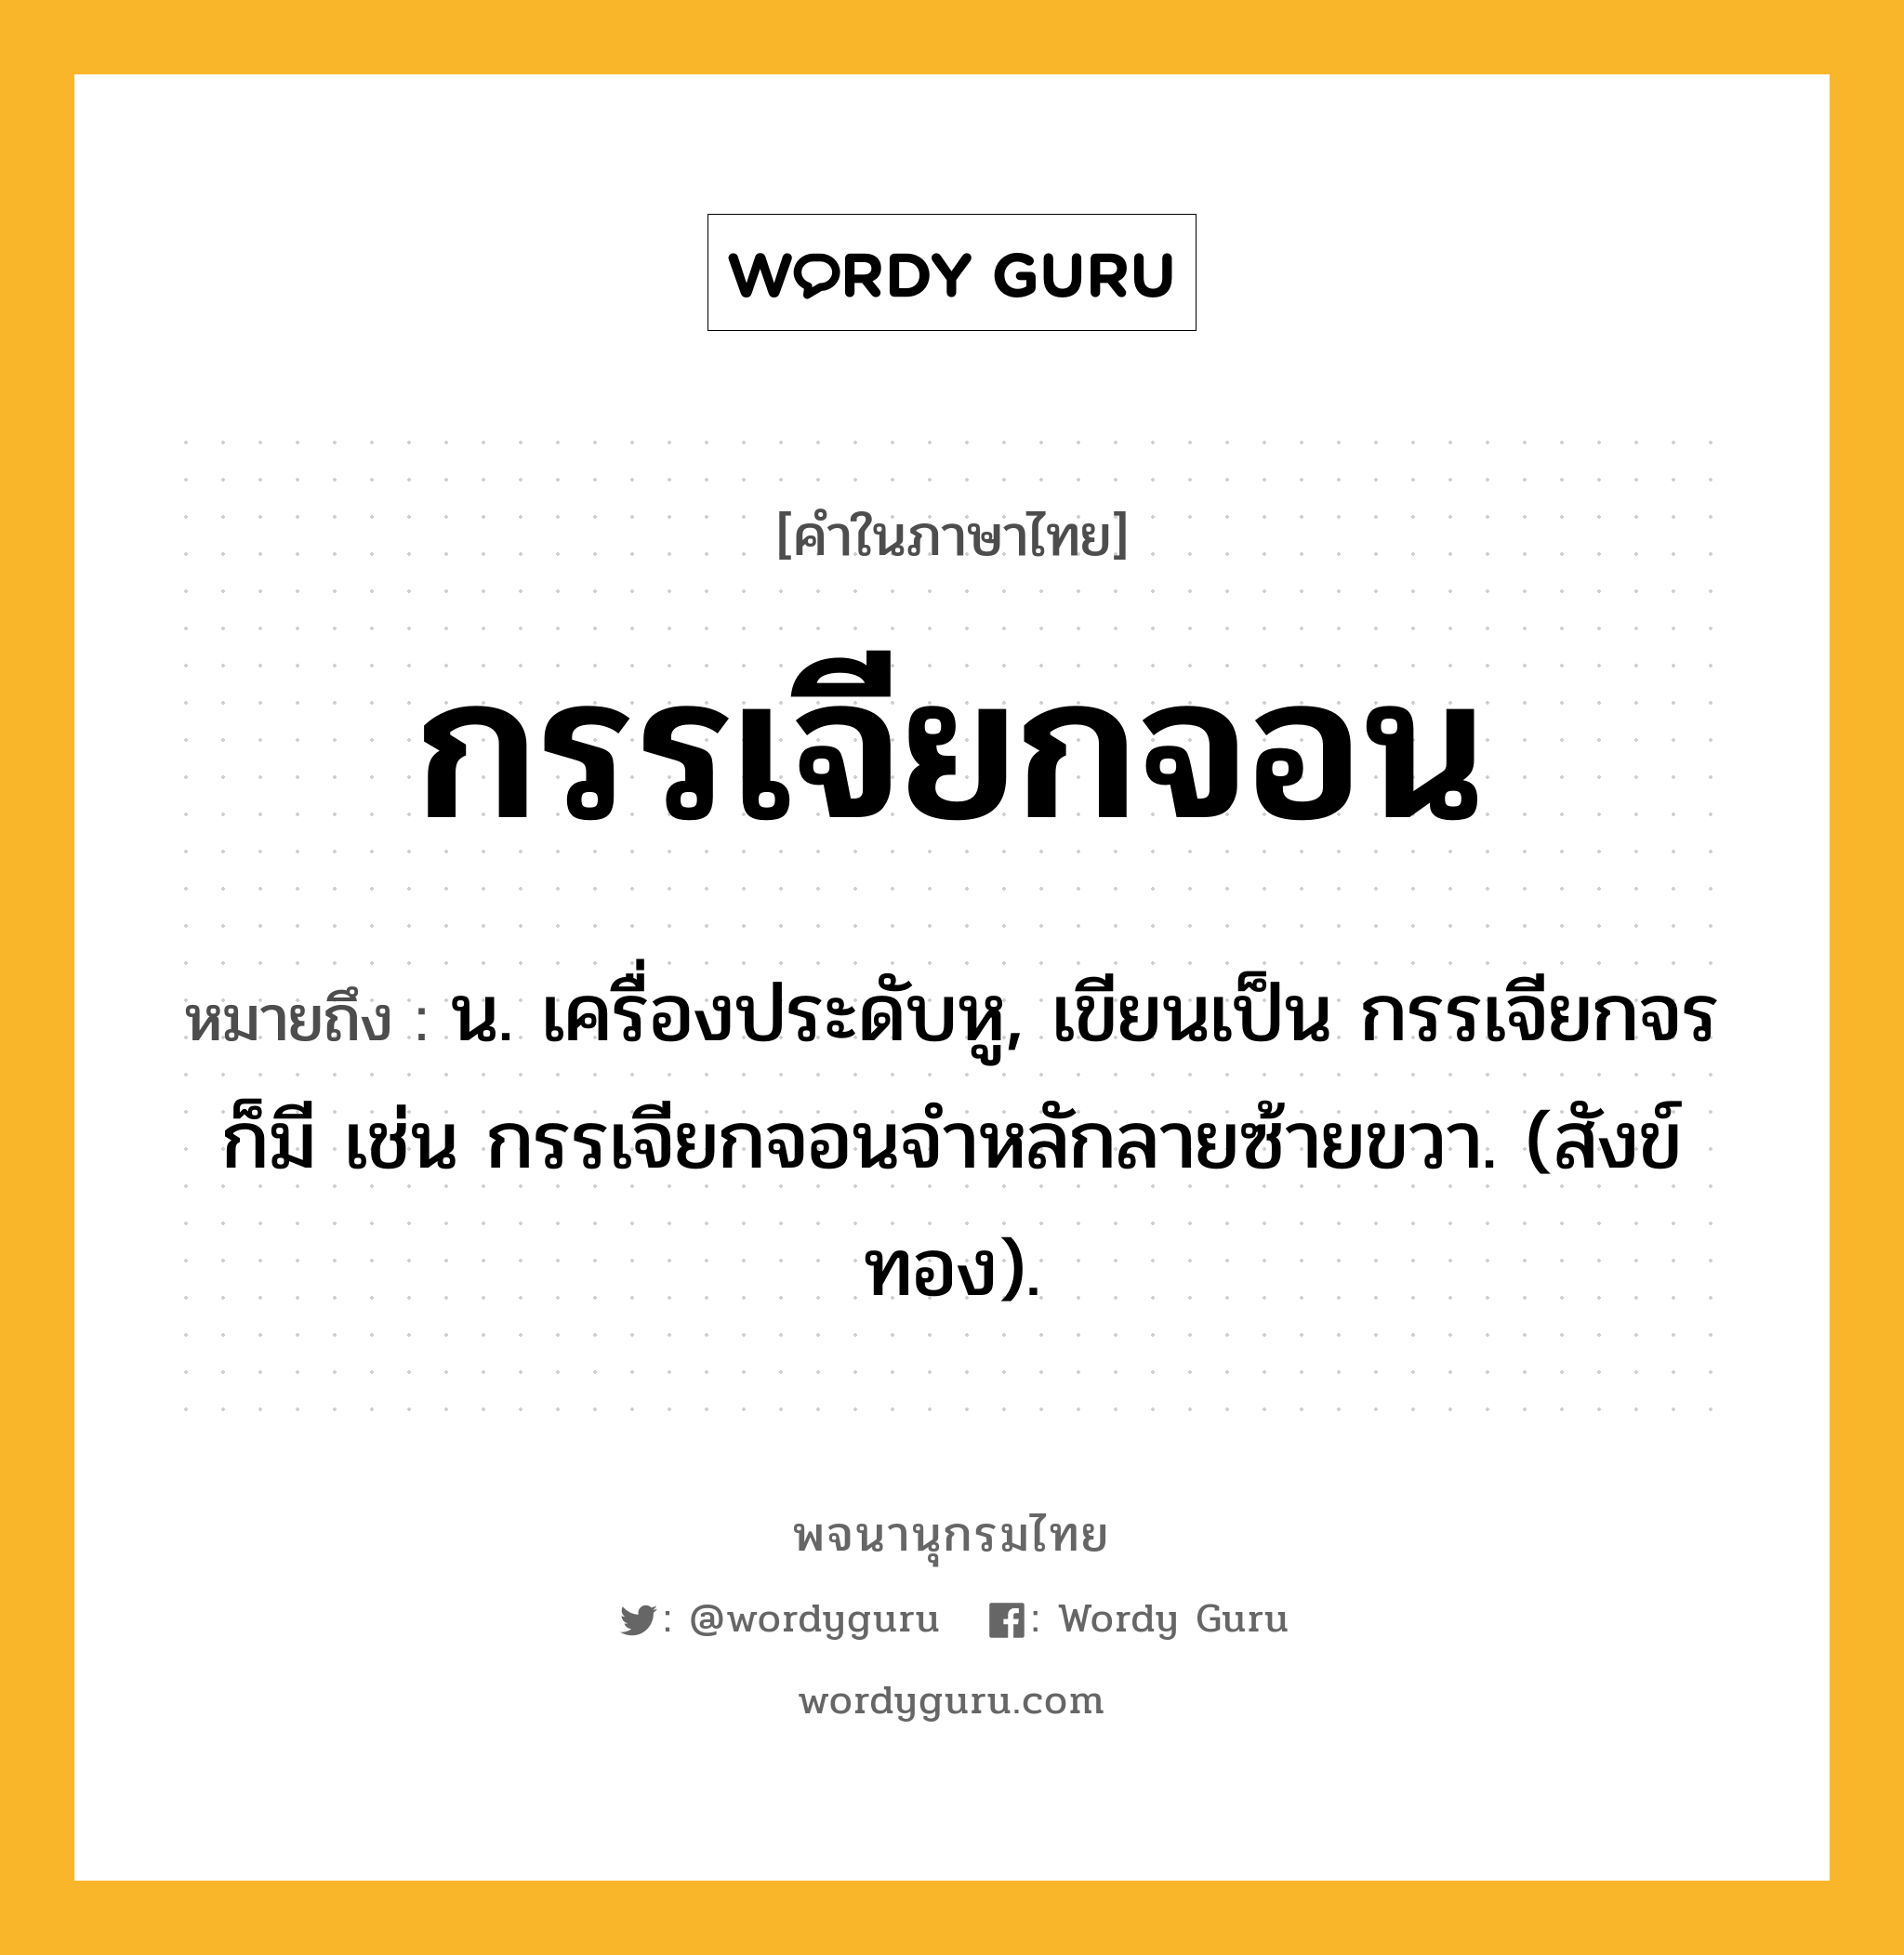 กรรเจียกจอน ความหมาย หมายถึงอะไร?, คำในภาษาไทย กรรเจียกจอน หมายถึง น. เครื่องประดับหู, เขียนเป็น กรรเจียกจร ก็มี เช่น กรรเจียกจอนจําหลักลายซ้ายขวา. (สังข์ทอง).